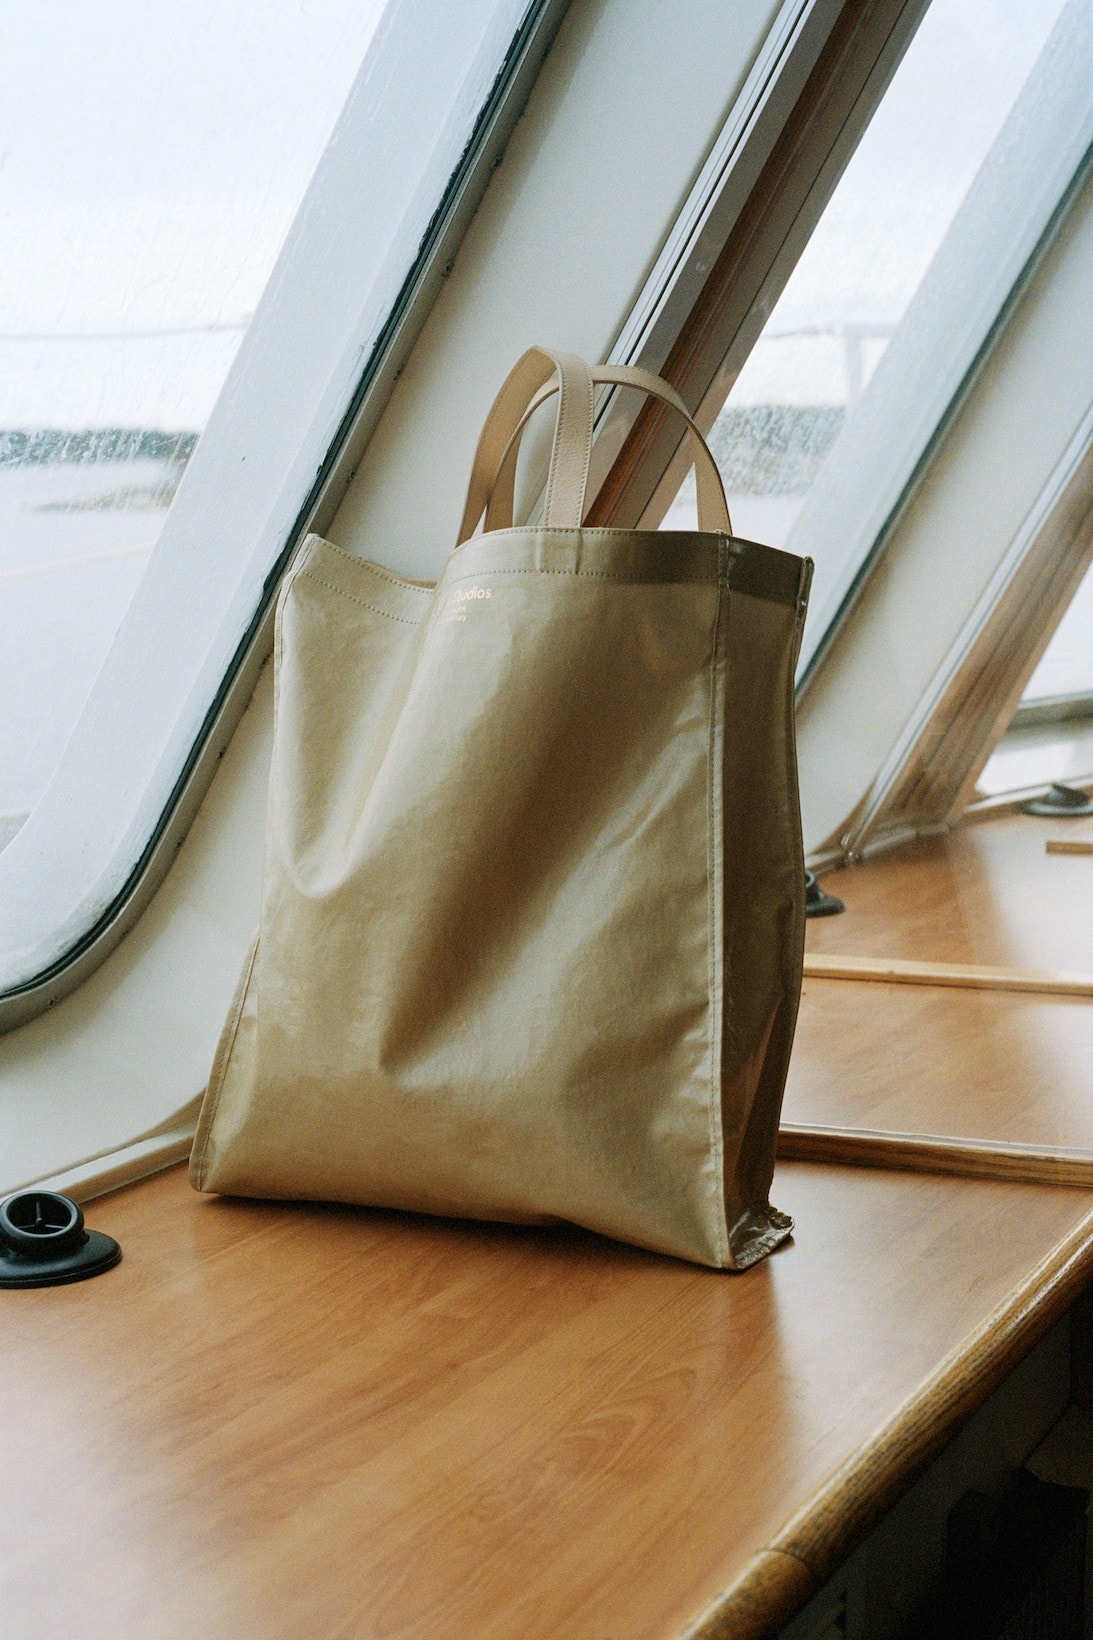 acne studios canvas bags handbags 2021 spring summer collection release